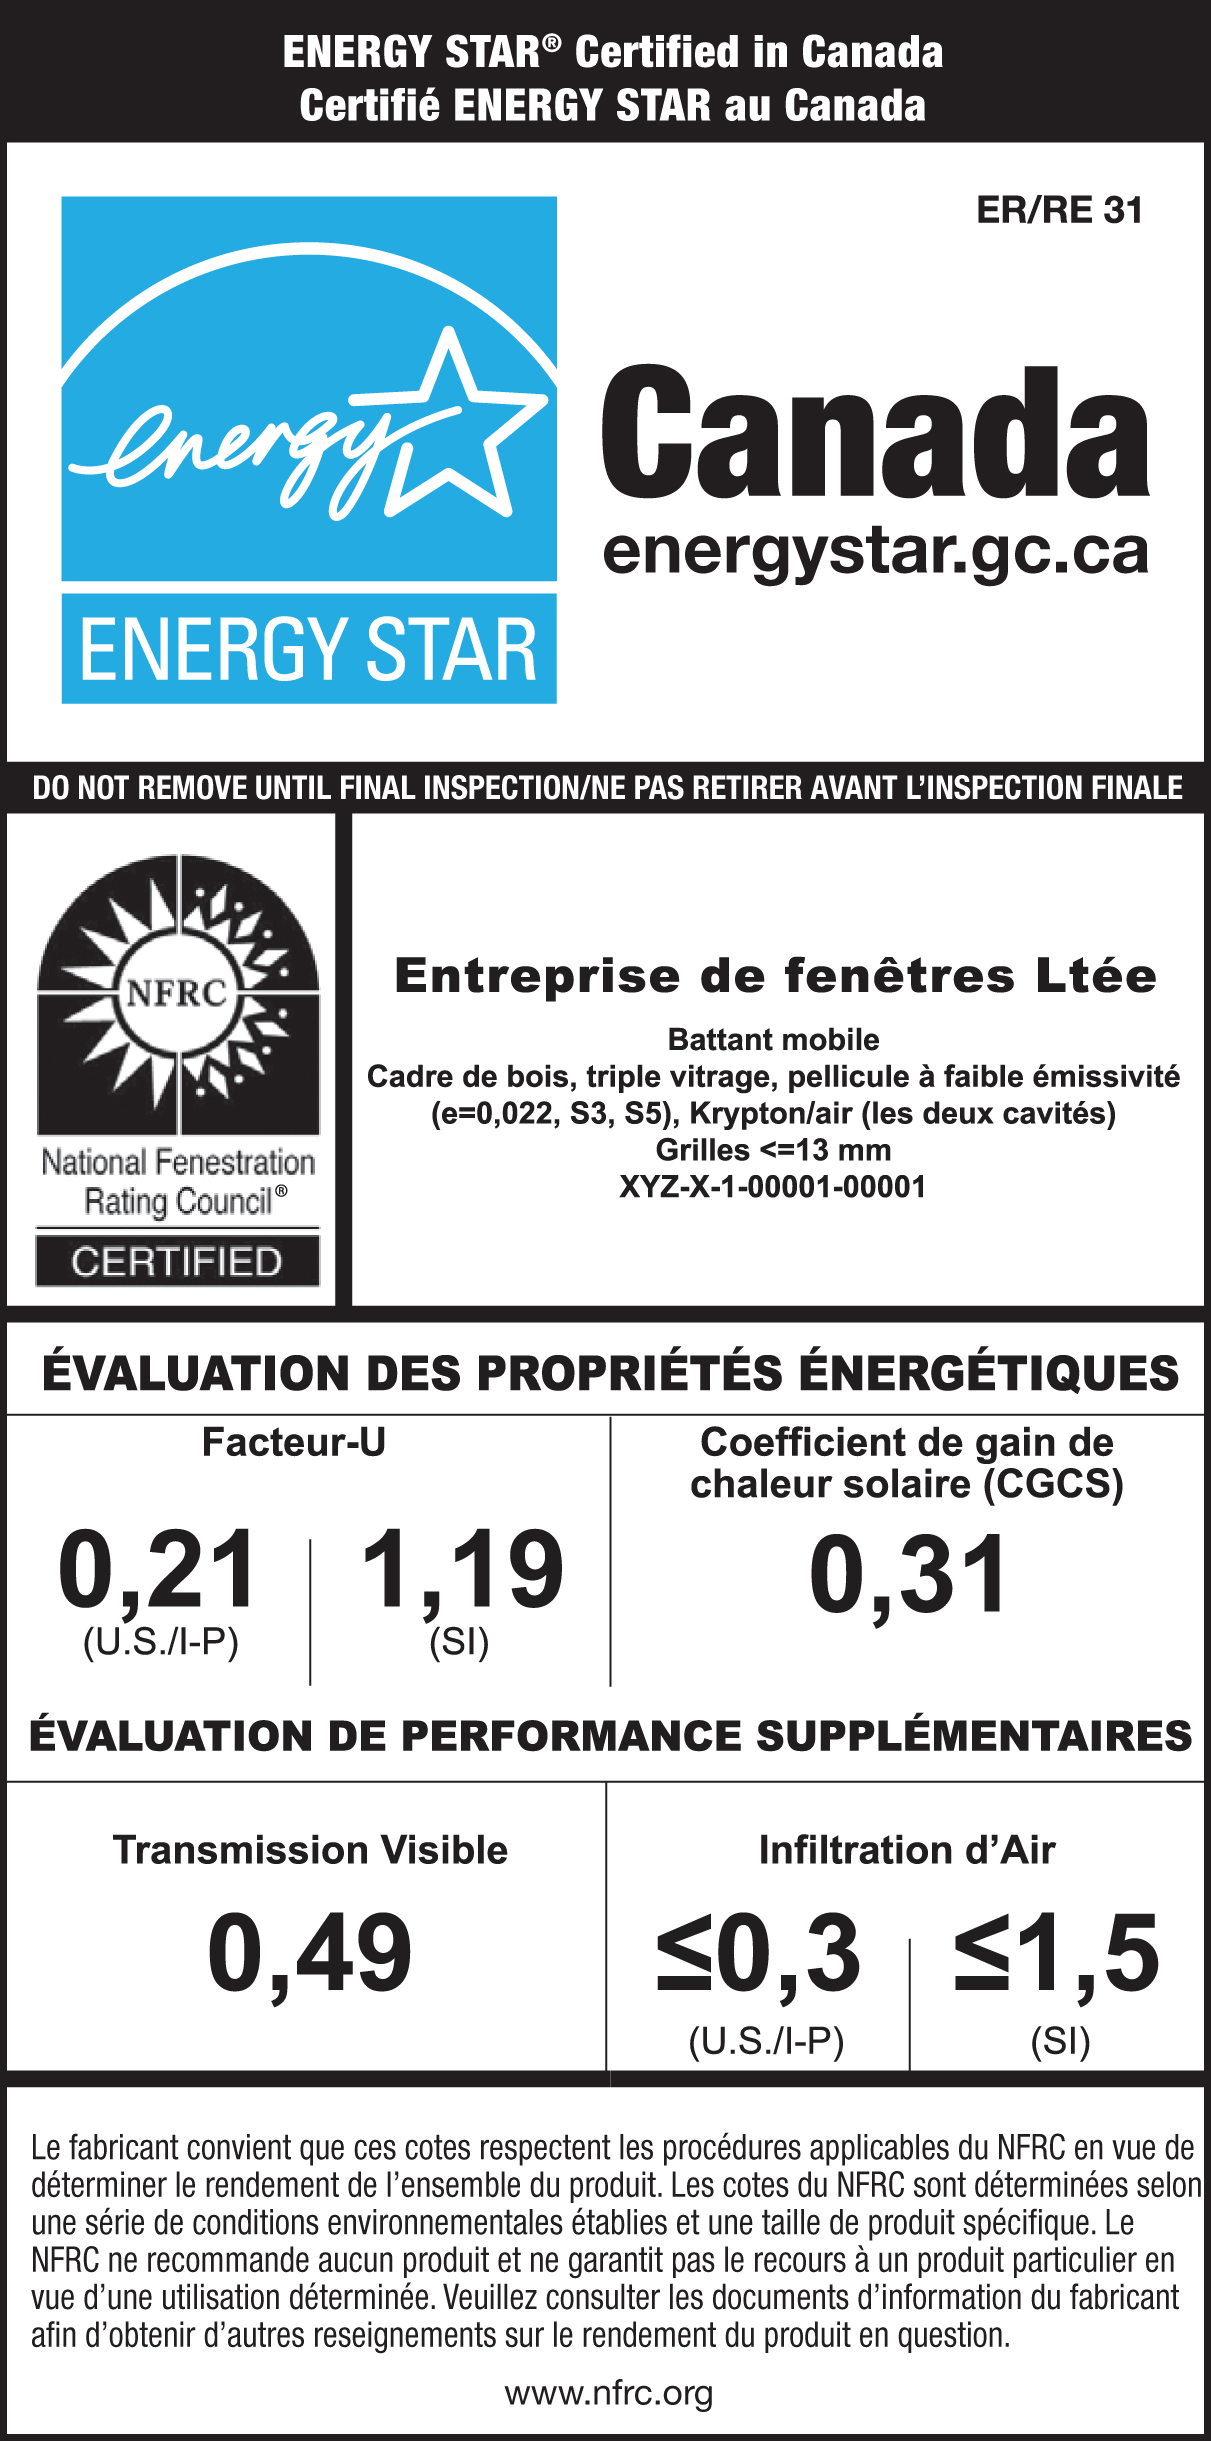 Modèle d’étiquette temporaire ENERGY STAR/NFRC pour fenêtre. La section ENERGY STAR comporte la marque de certification ENERGY STAR ainsi que du texte indiquant que le produit est certifié pour tout le Canada. La section NFRC comporte la marque de certification NFRC ainsi que les valeurs de rendement du produit, son nom de fabrique et la description du modèle.